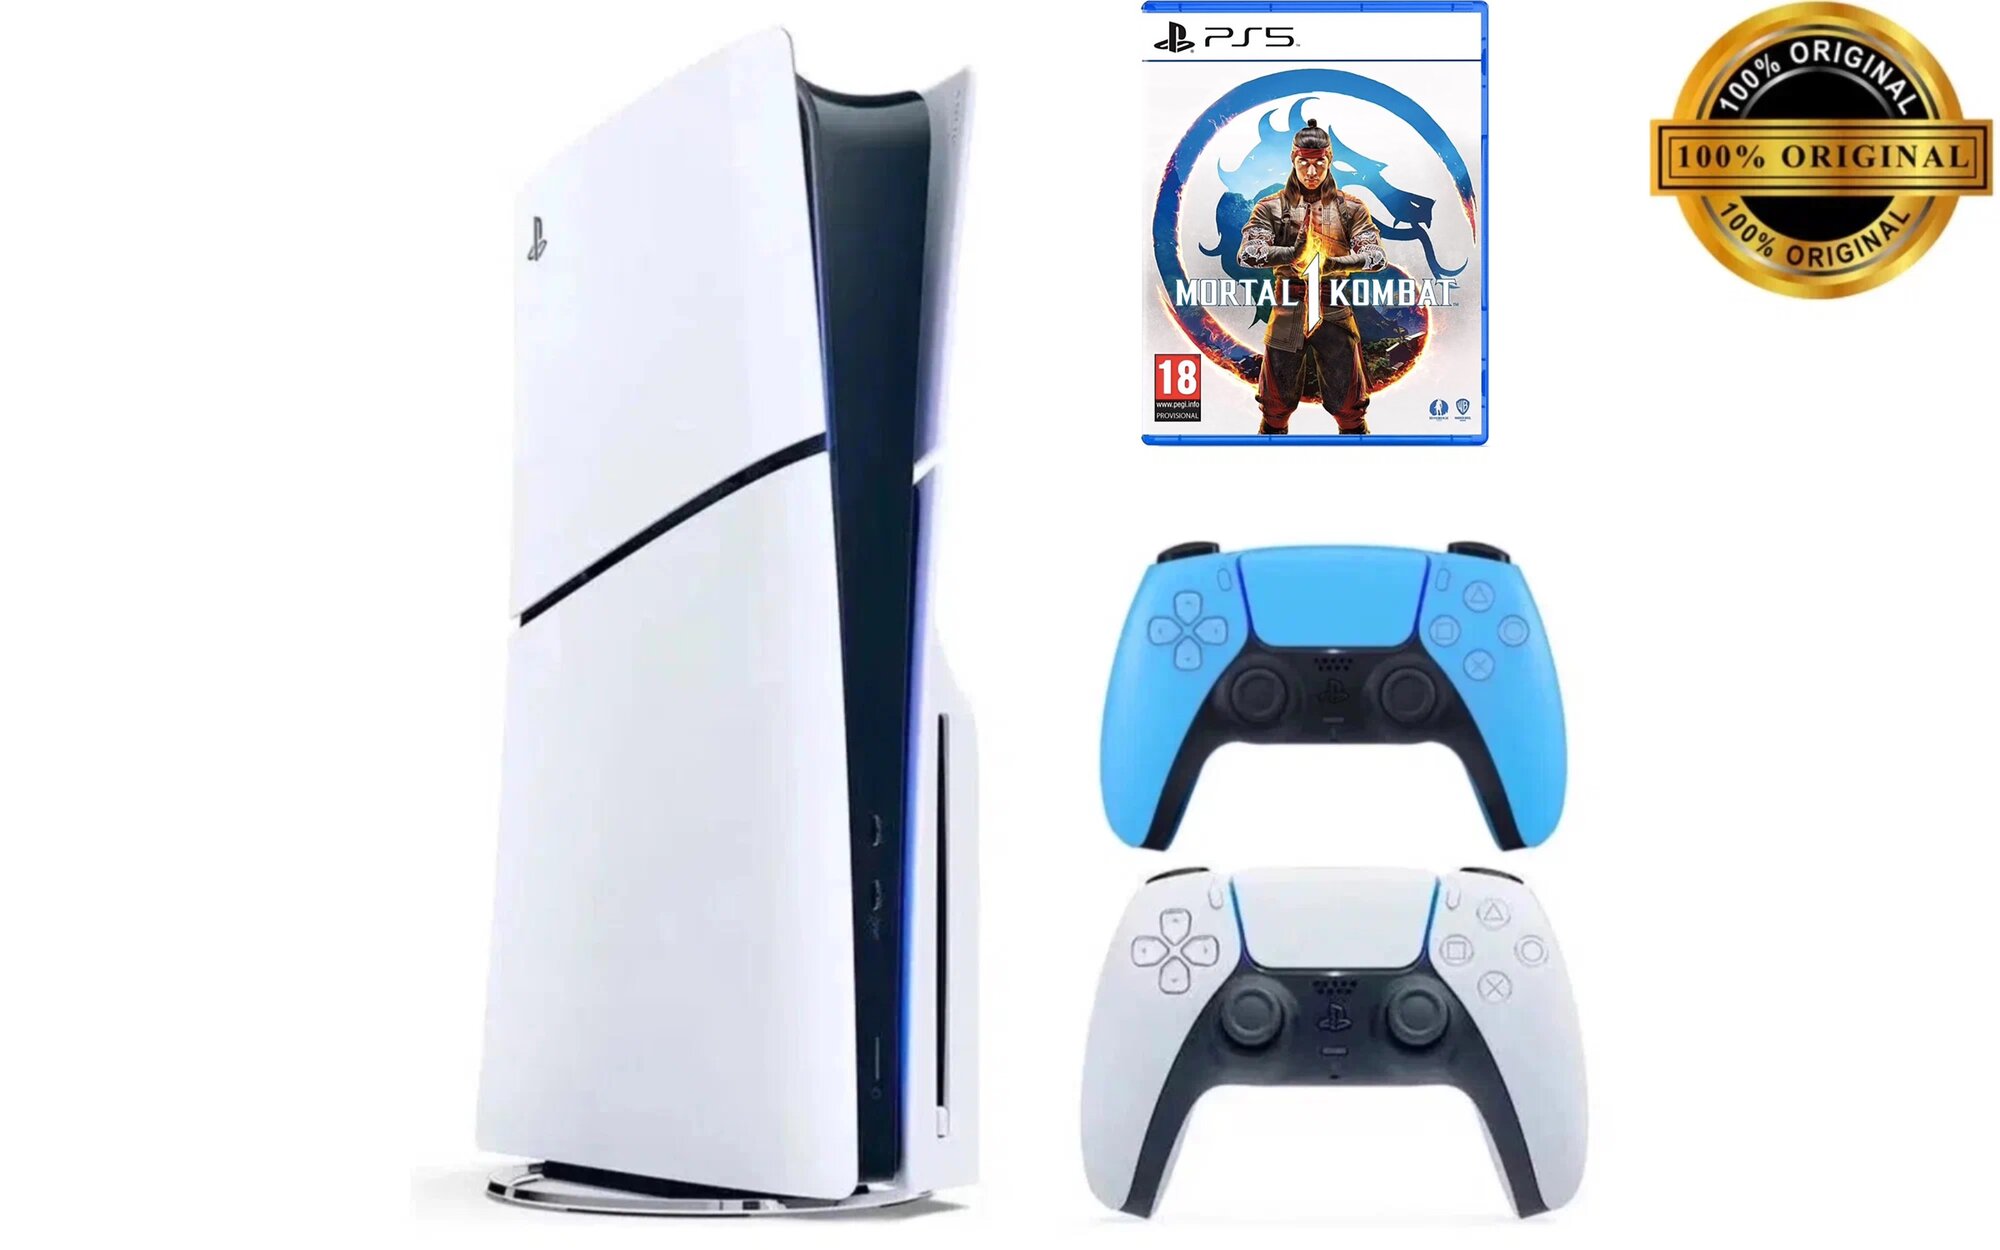 Игровая приставка Sony PlayStation 5 Slim, с дисководом, 1 ТБ, два геймпада (белый и голубой), Mortal Kombat 1